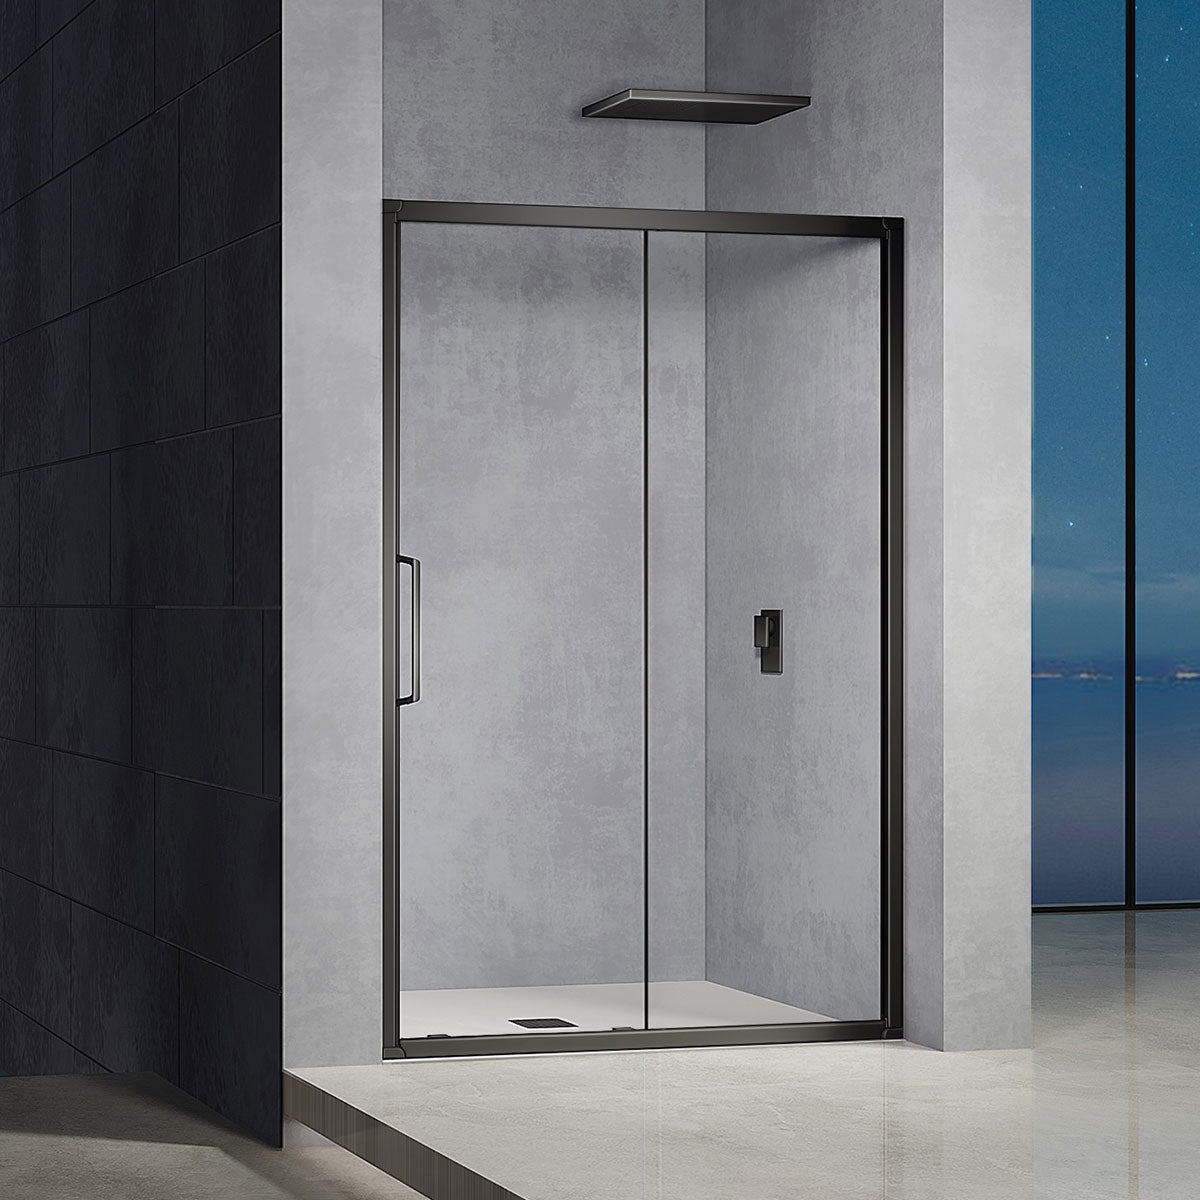 Porte de douche en aluminium et verre profilés noirs mats installation entre deux murs